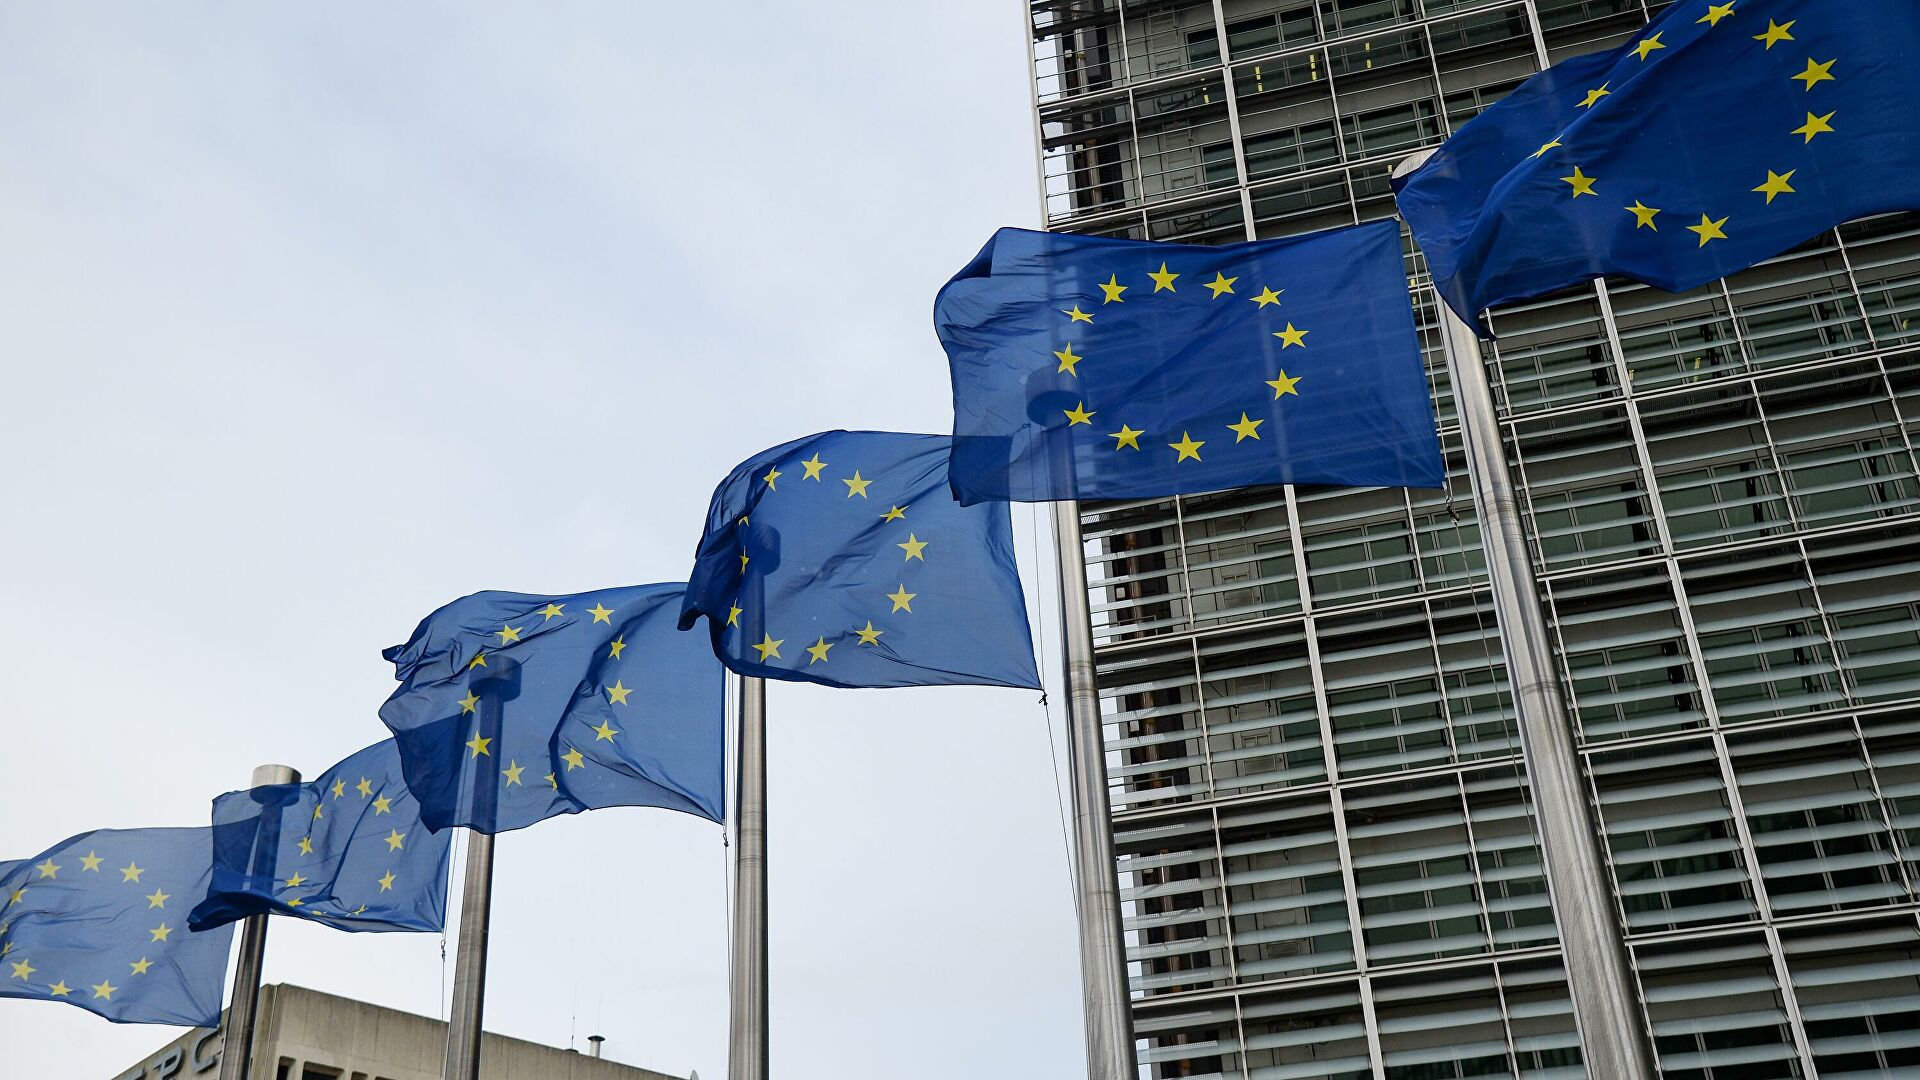 Флаги Евросоюза возле здания штаб-квартиры Европейского парламента в Брюсселе - РИА Новости, 1920, 30.10.2021